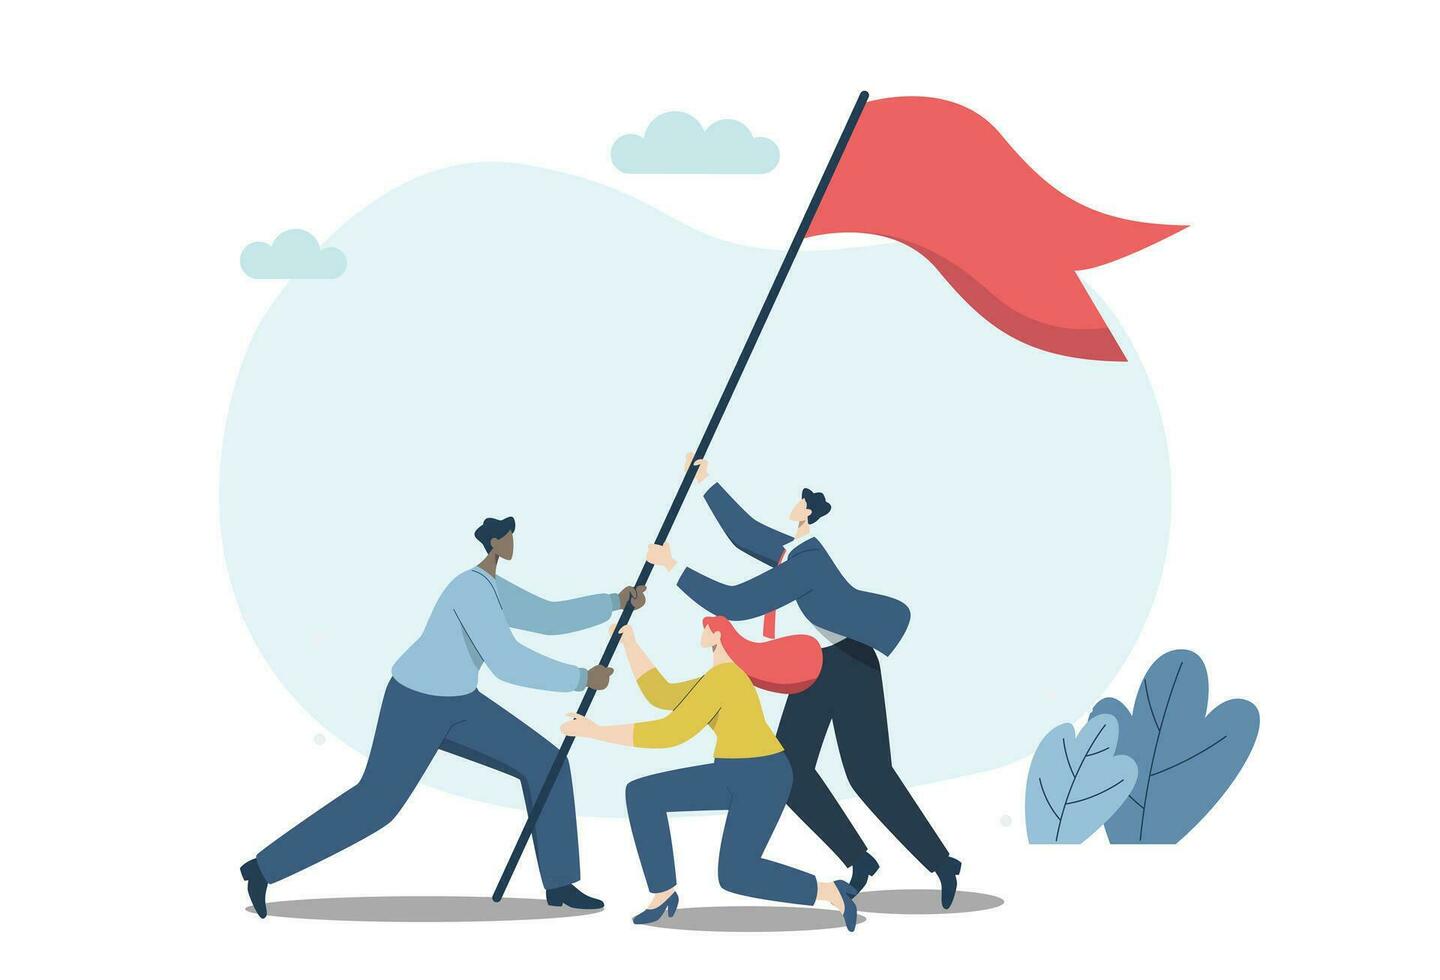 stark lagarbete ledande till Framgång för organisationer, företag människor arbetssätt som en team eller partners portion till höja de flagga av seger. vektor design illustration.